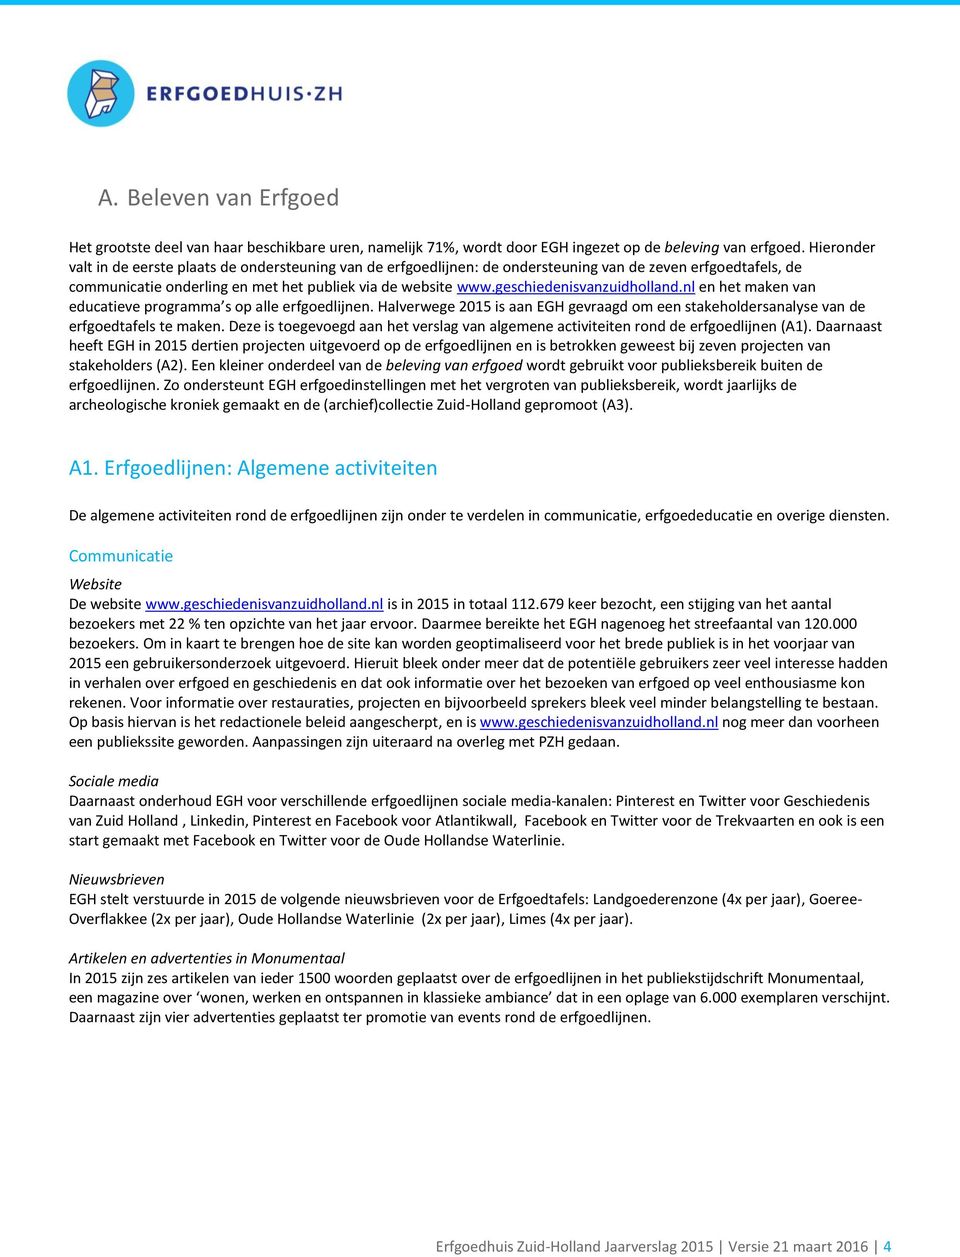 geschiedenisvanzuidholland.nl en het maken van educatieve programma s op alle erfgoedlijnen. Halverwege 2015 is aan EGH gevraagd om een stakeholdersanalyse van de erfgoedtafels te maken.